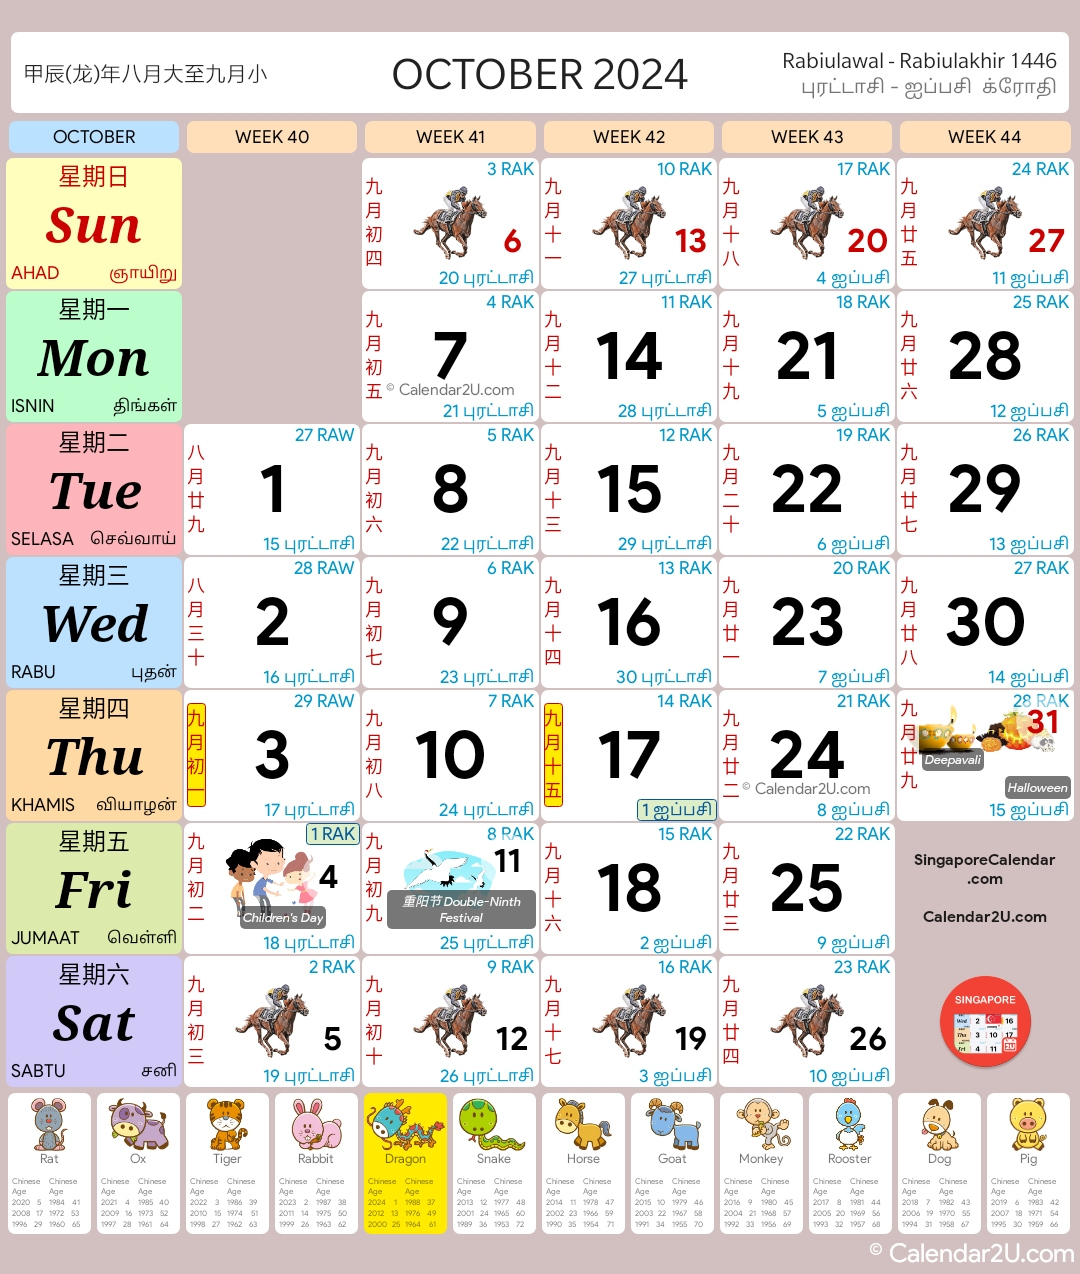 Singapore Calendar Year 2024 - Singapore Calendar | Year 2024 Calendar Singapore